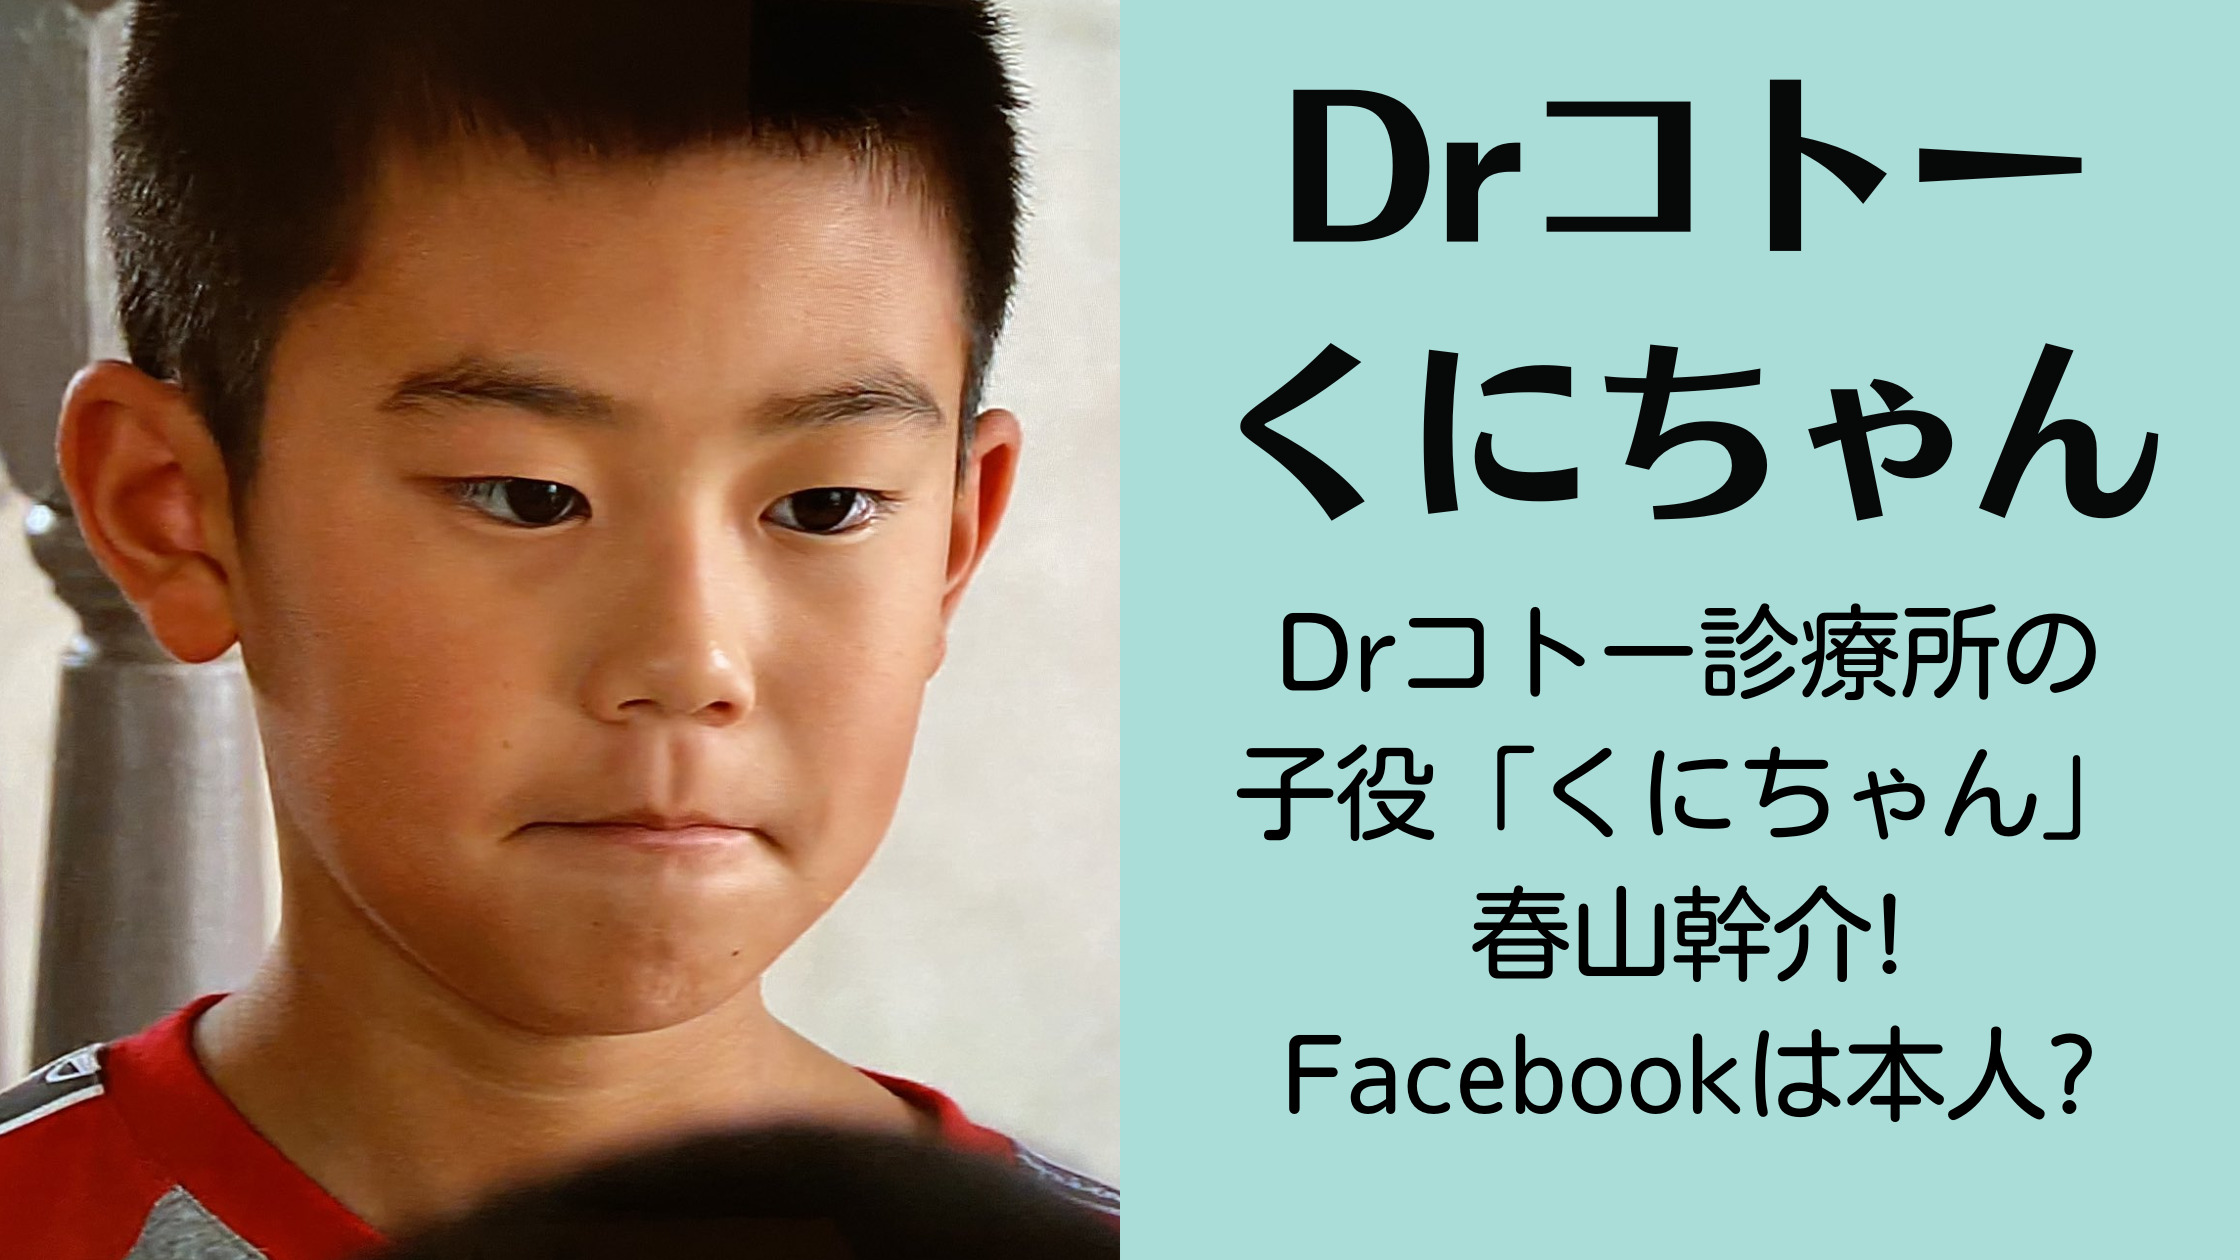 Drコトー診療所の子役「くにちゃん」は春山幹介!Facebookは本人?